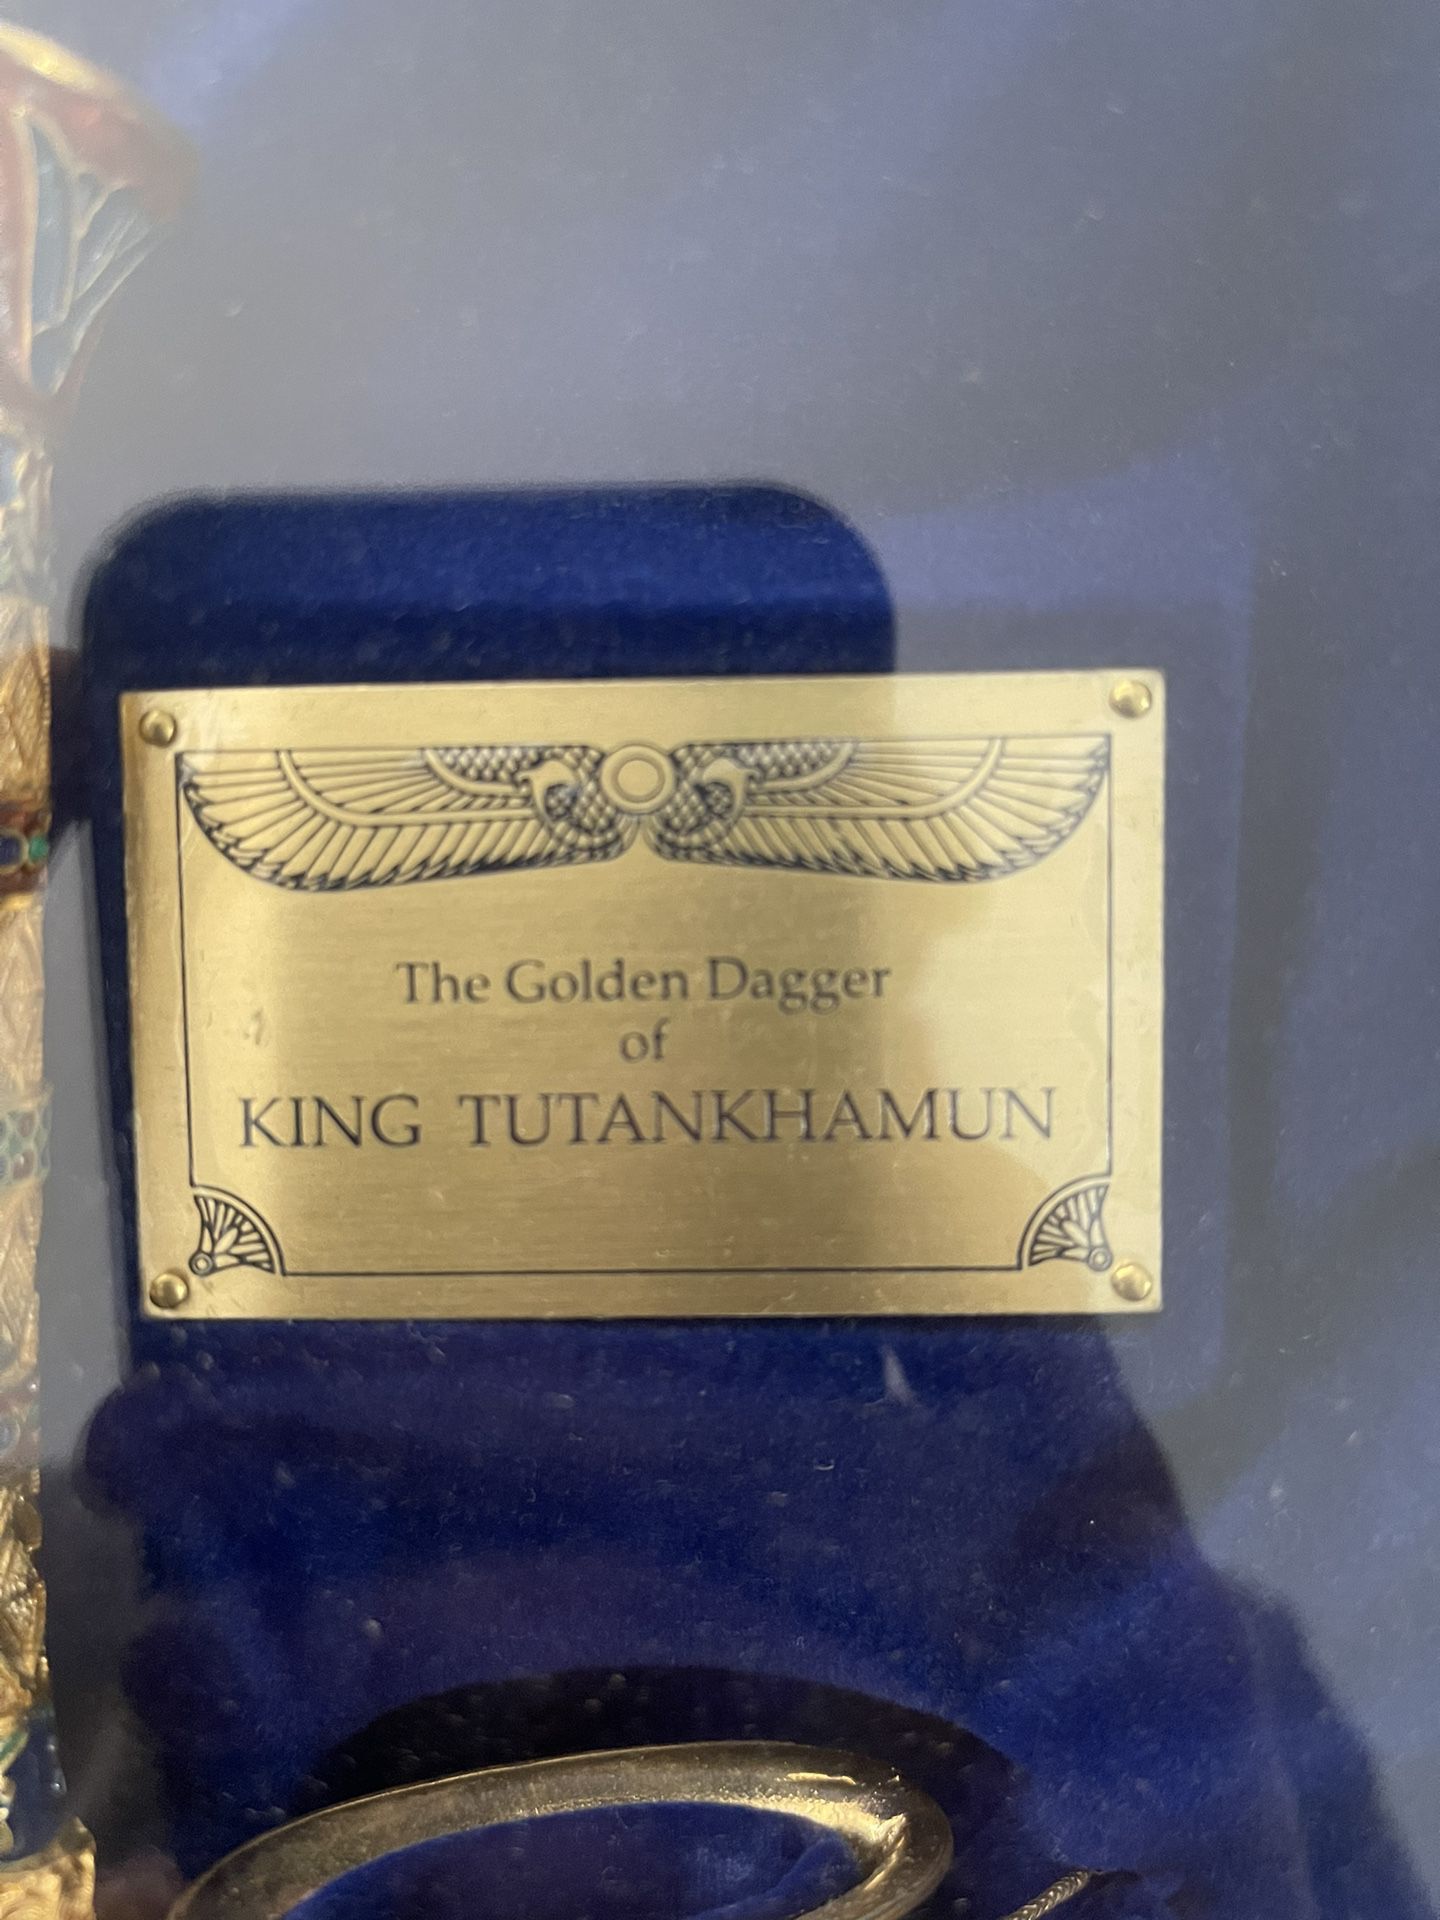 "The Golden Dagger of King Tutankhamun", Franklin Mint. 